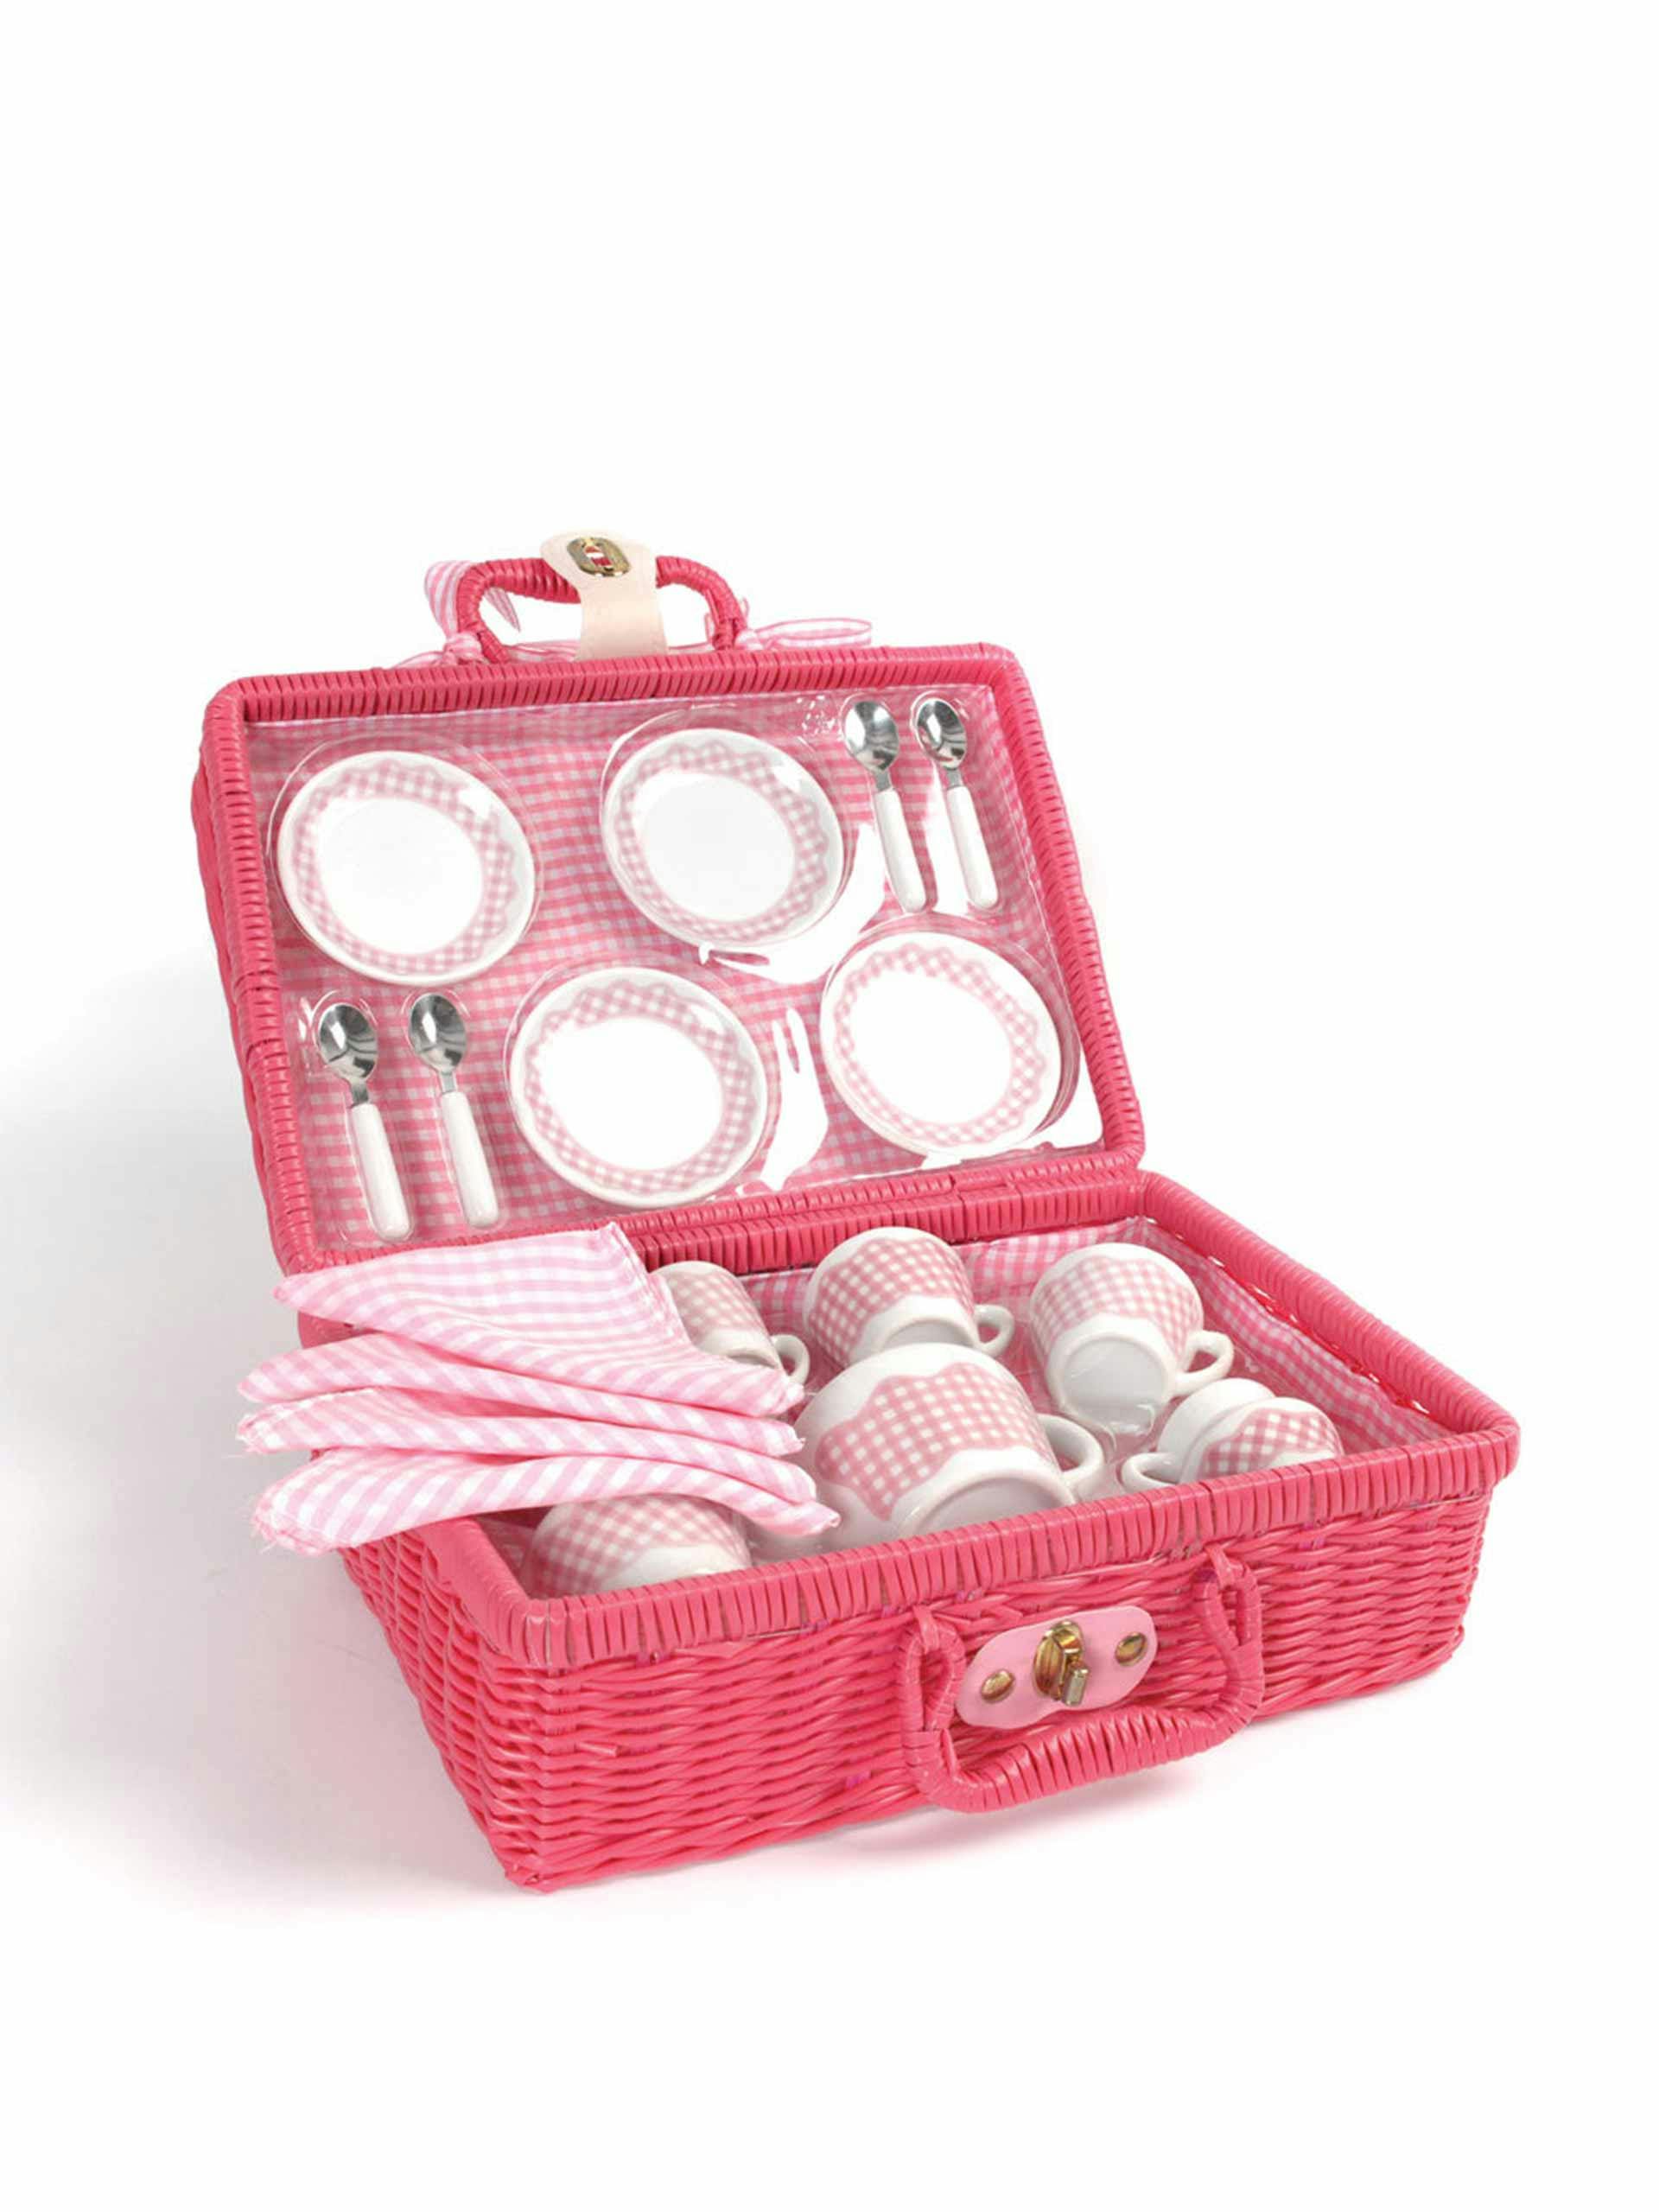 Pink wooden picnic tea set